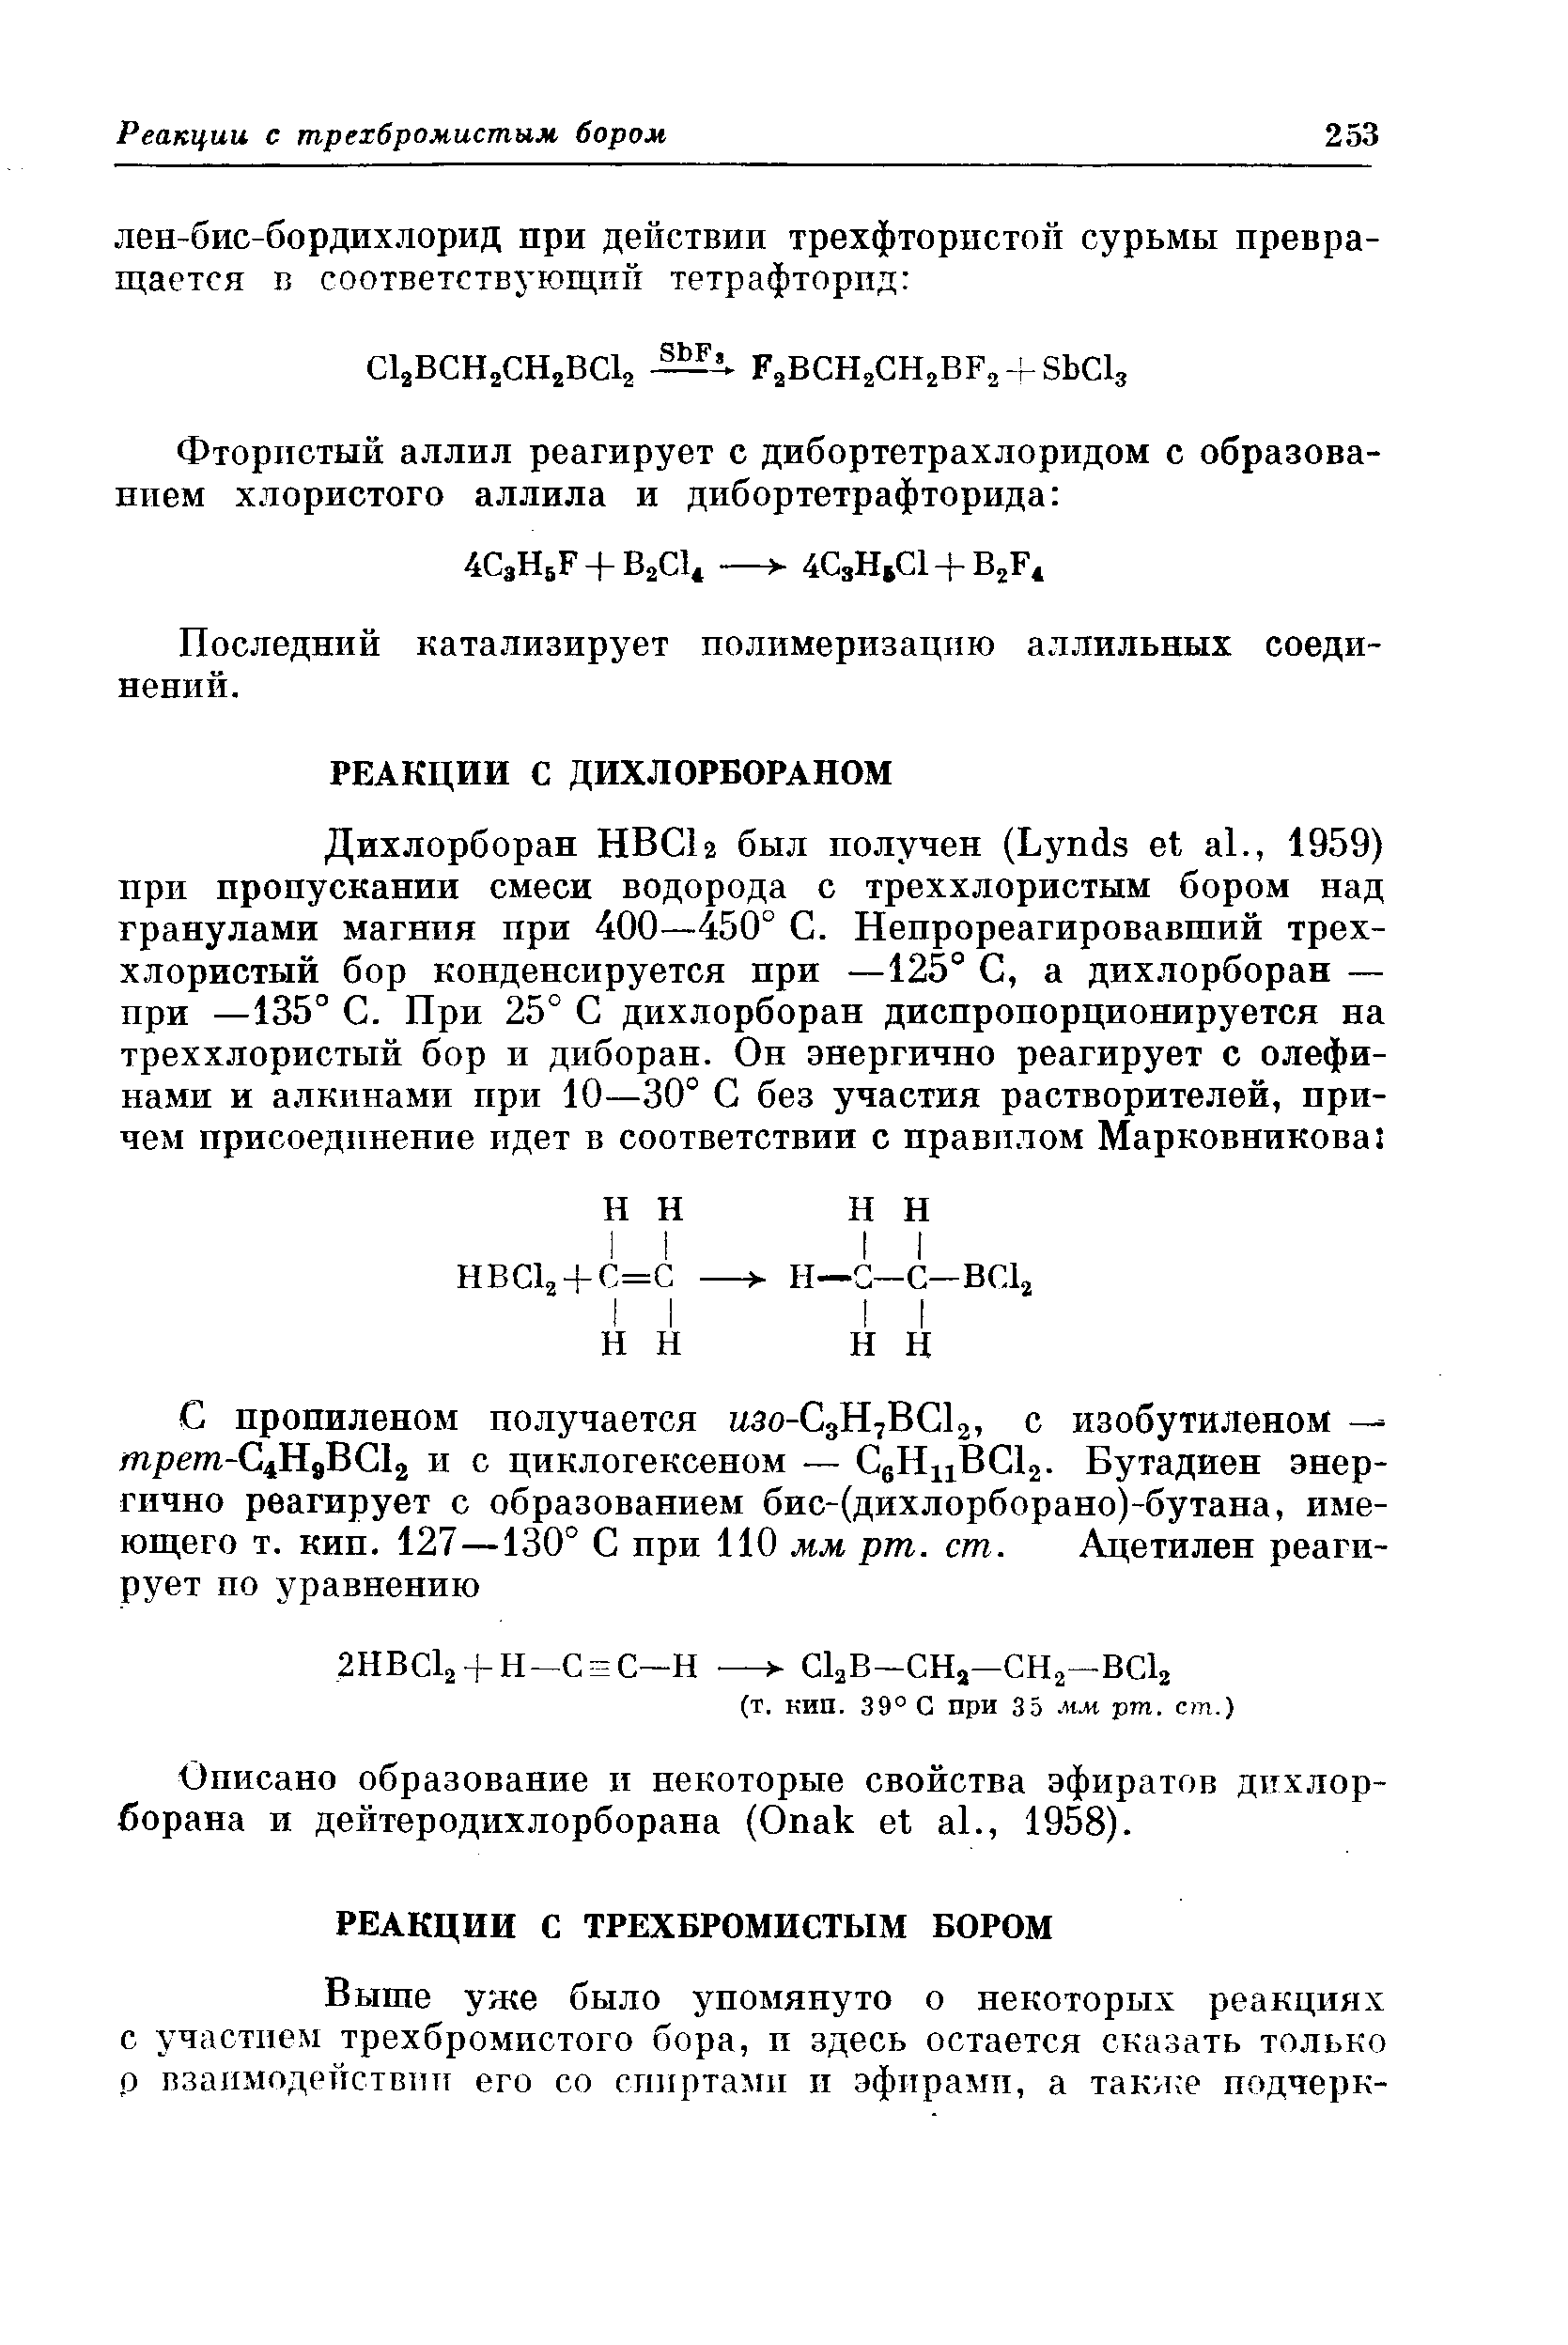 Описано образование и некоторые свойства эфиратов дихлор-борана и дейтеродихлорборана (Опак et al., 1958).